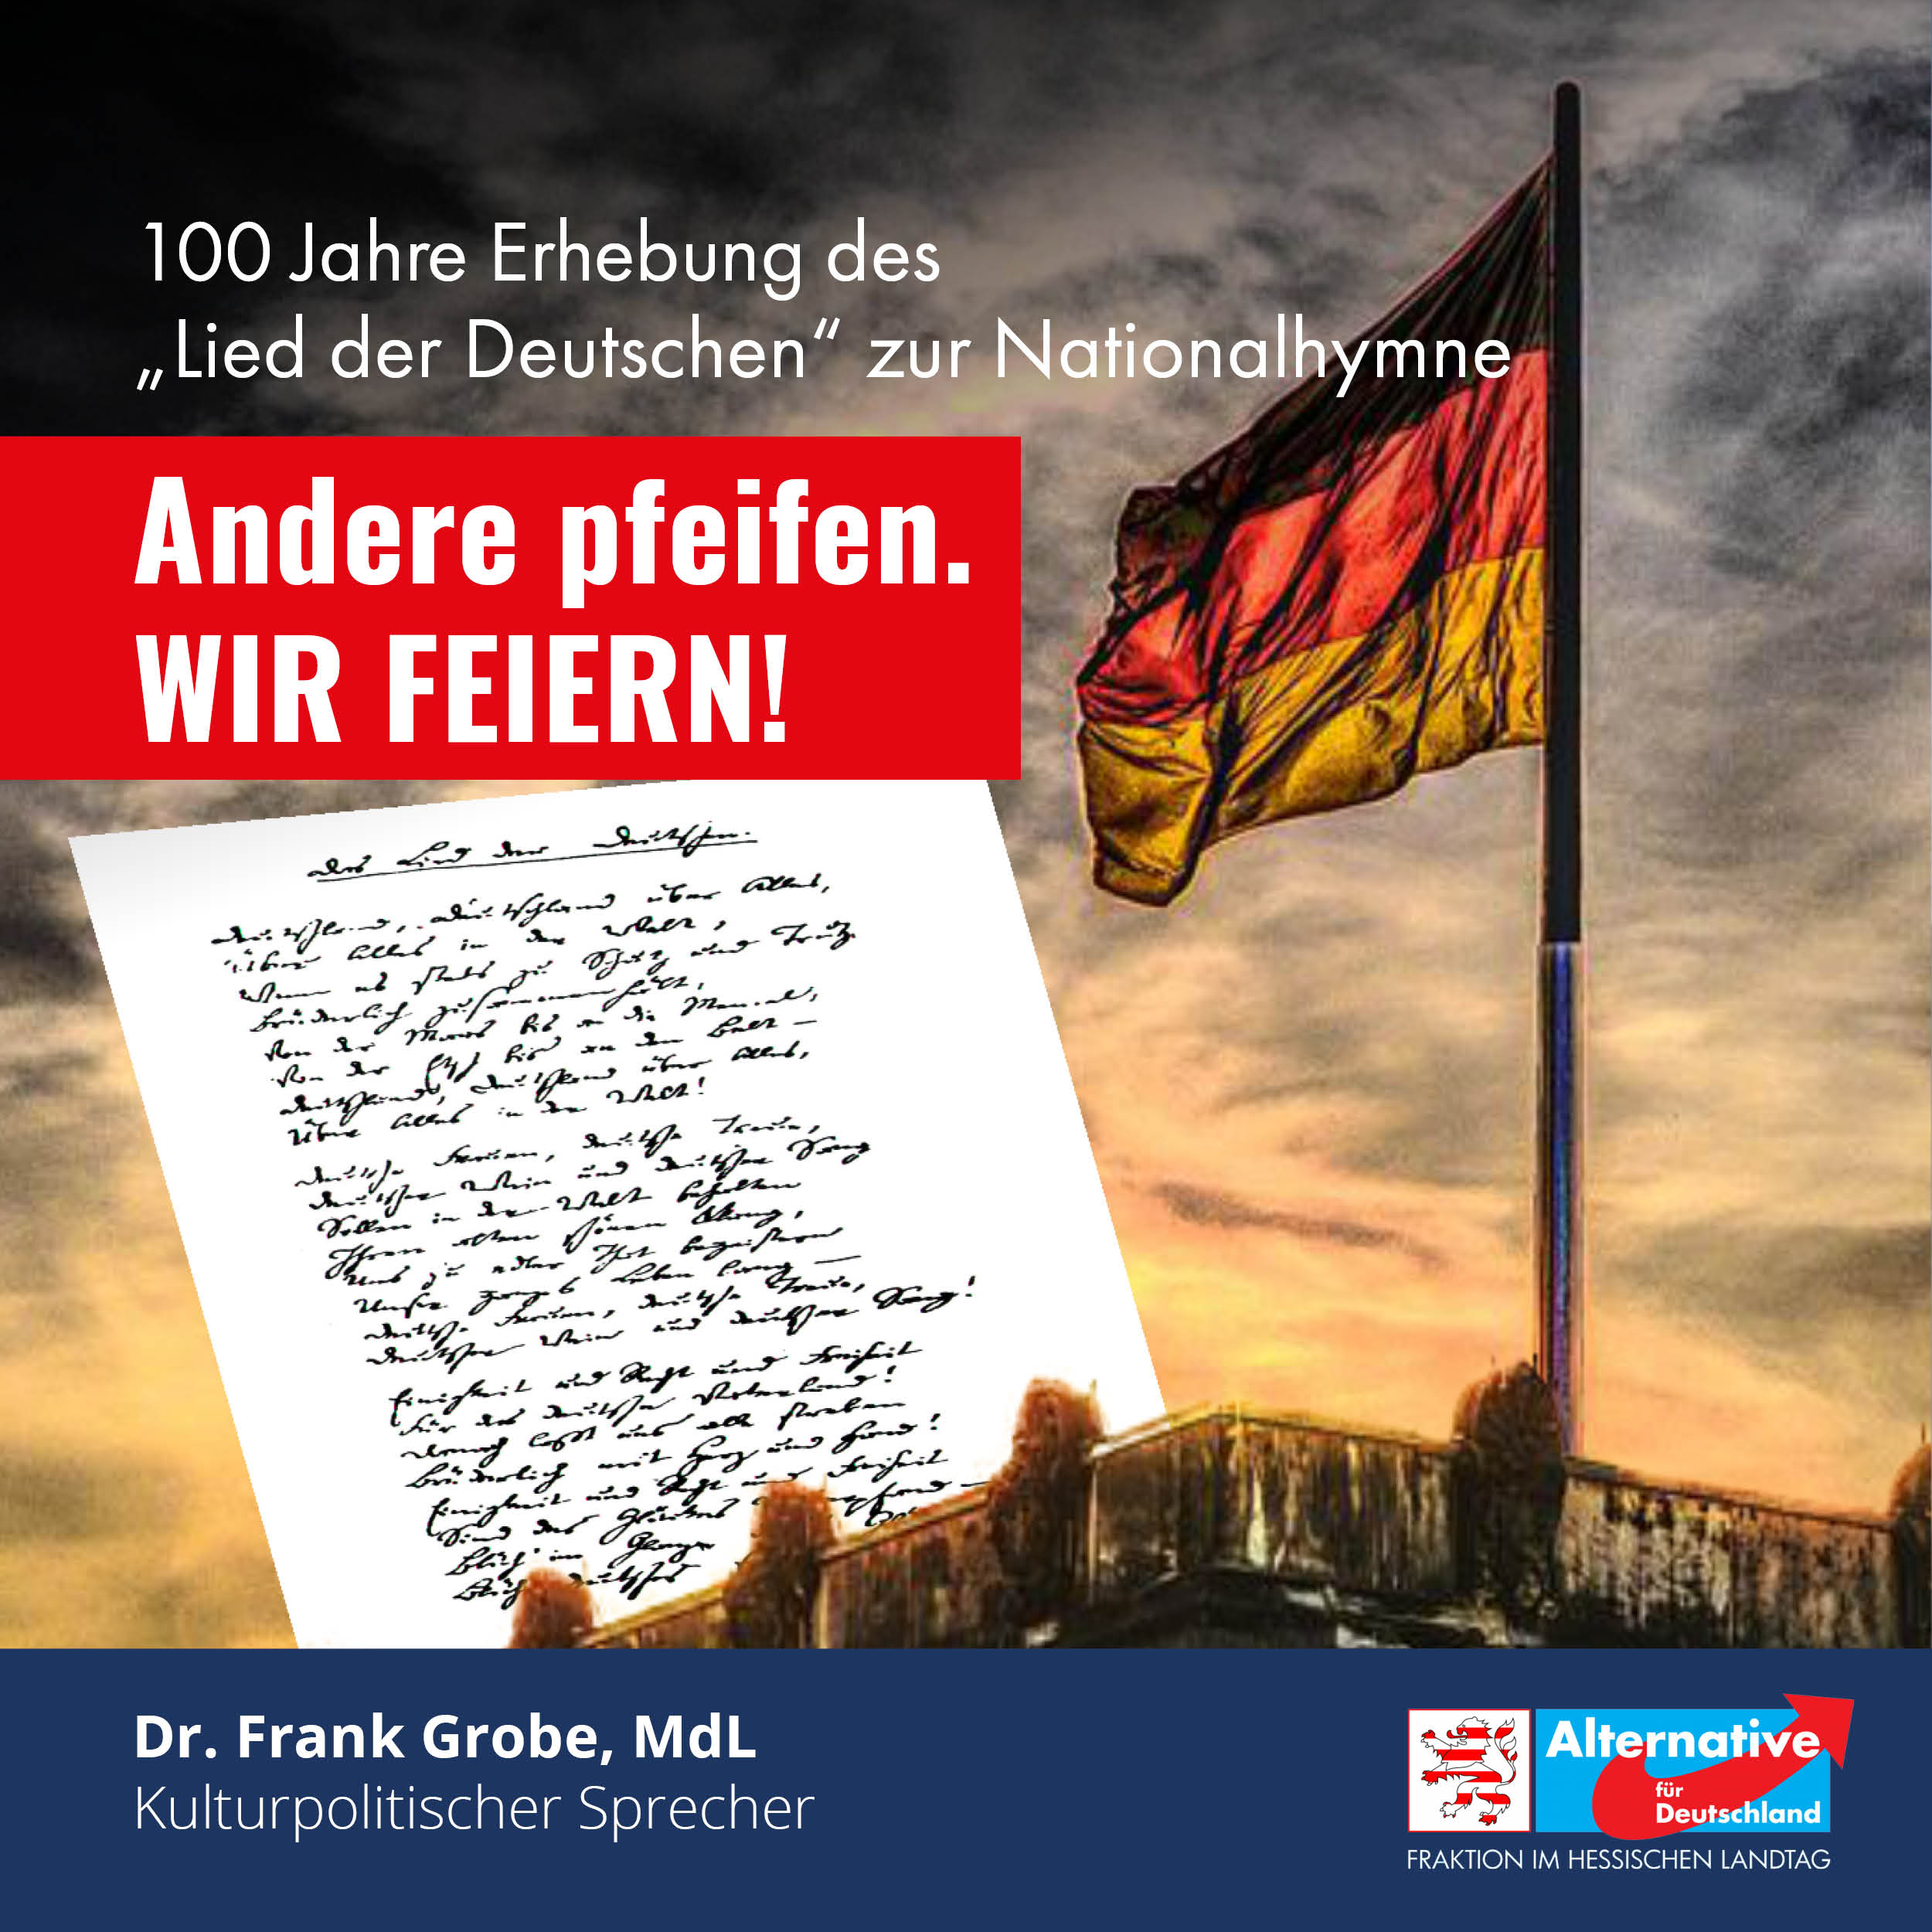 You are currently viewing 100. Jahrestag Erhebung des „Lied der Deutschen“ zur Nationalhymne